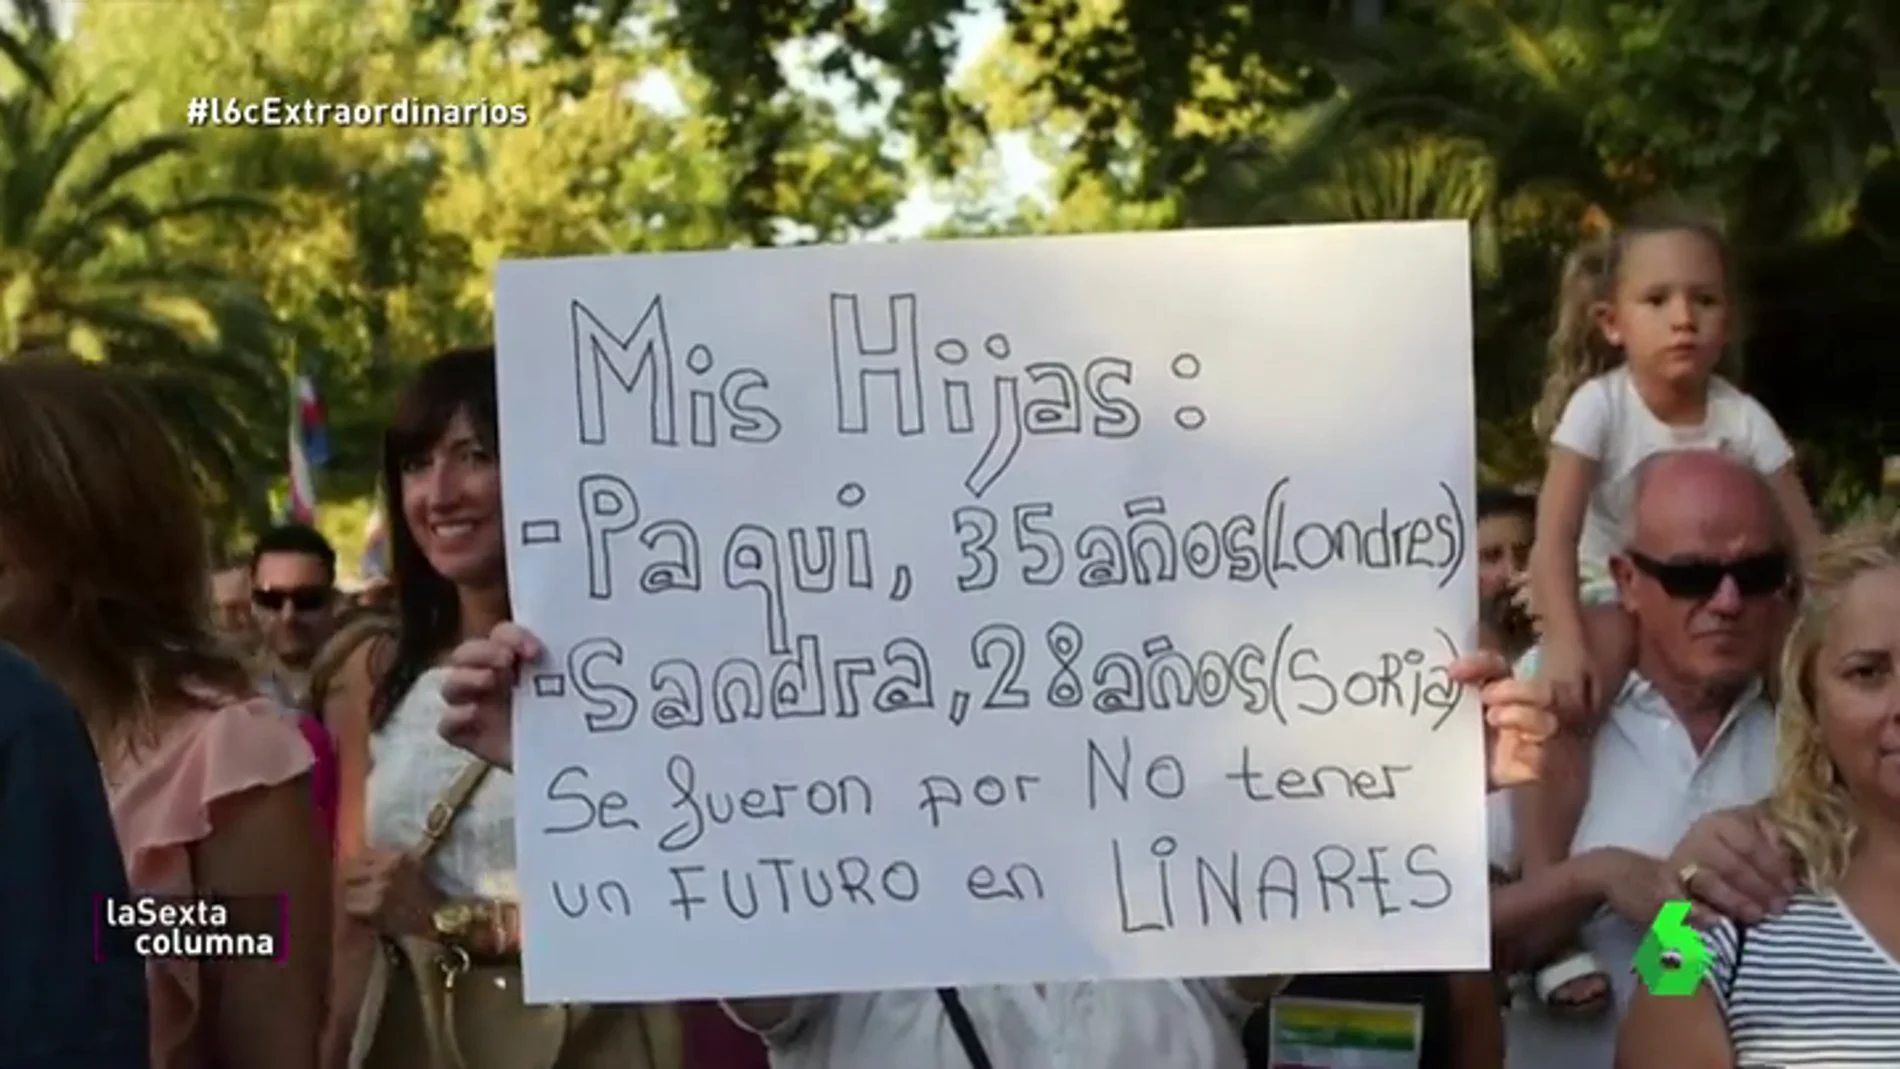 Linares, la ciudad de 58.000 vecinos que sacó a la calle a 40.000 manifestantes: "Los prejubilados mantienen a las familias"